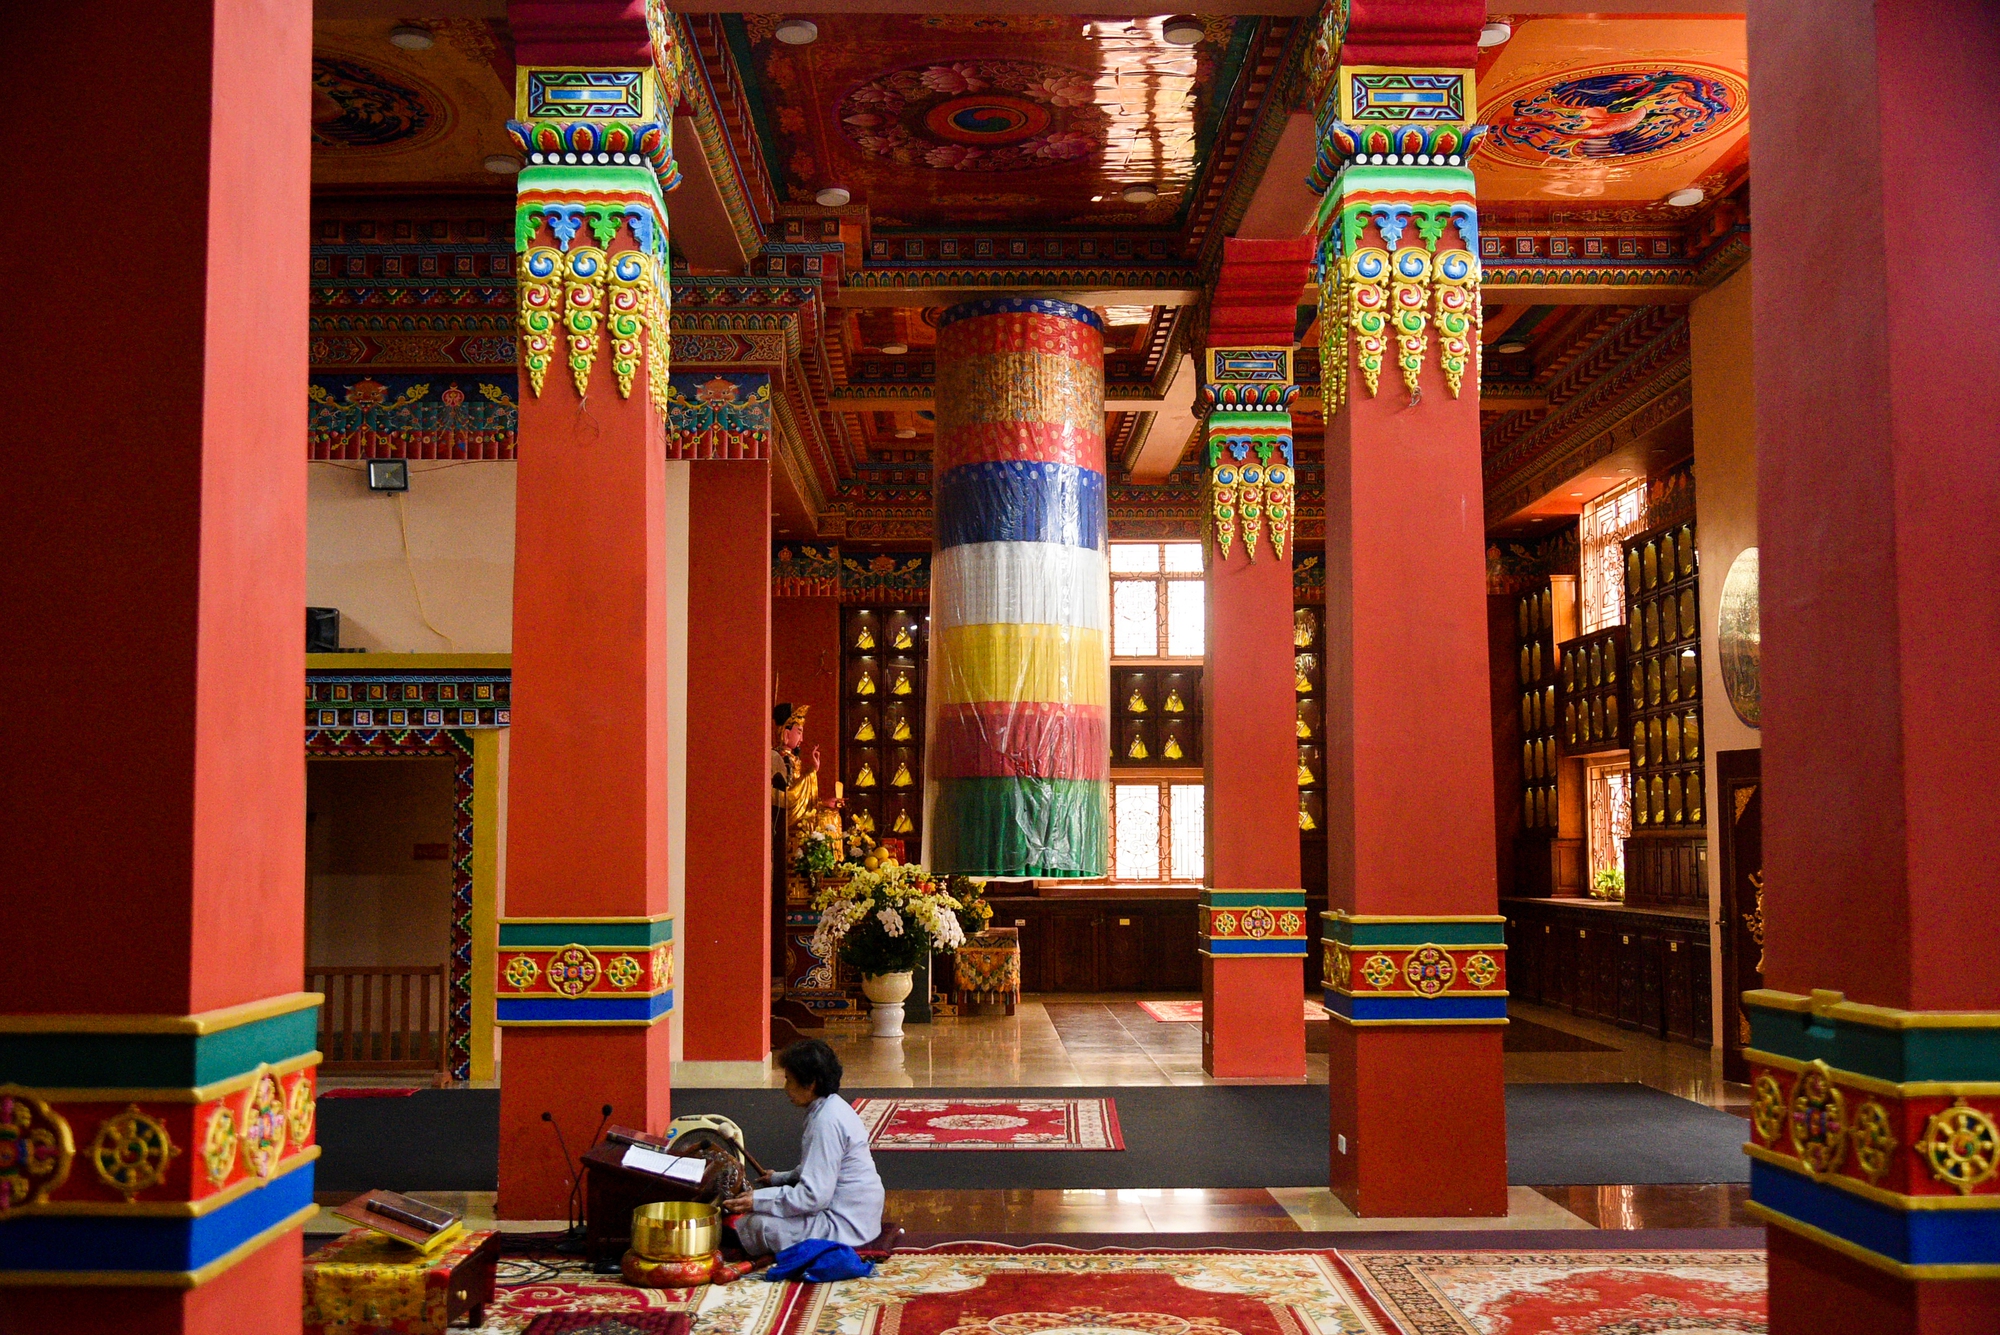 Khám phá ngôi chùa Tây Tạng 600 năm tuổi độc nhất tại Hà Nội - Ảnh 5.